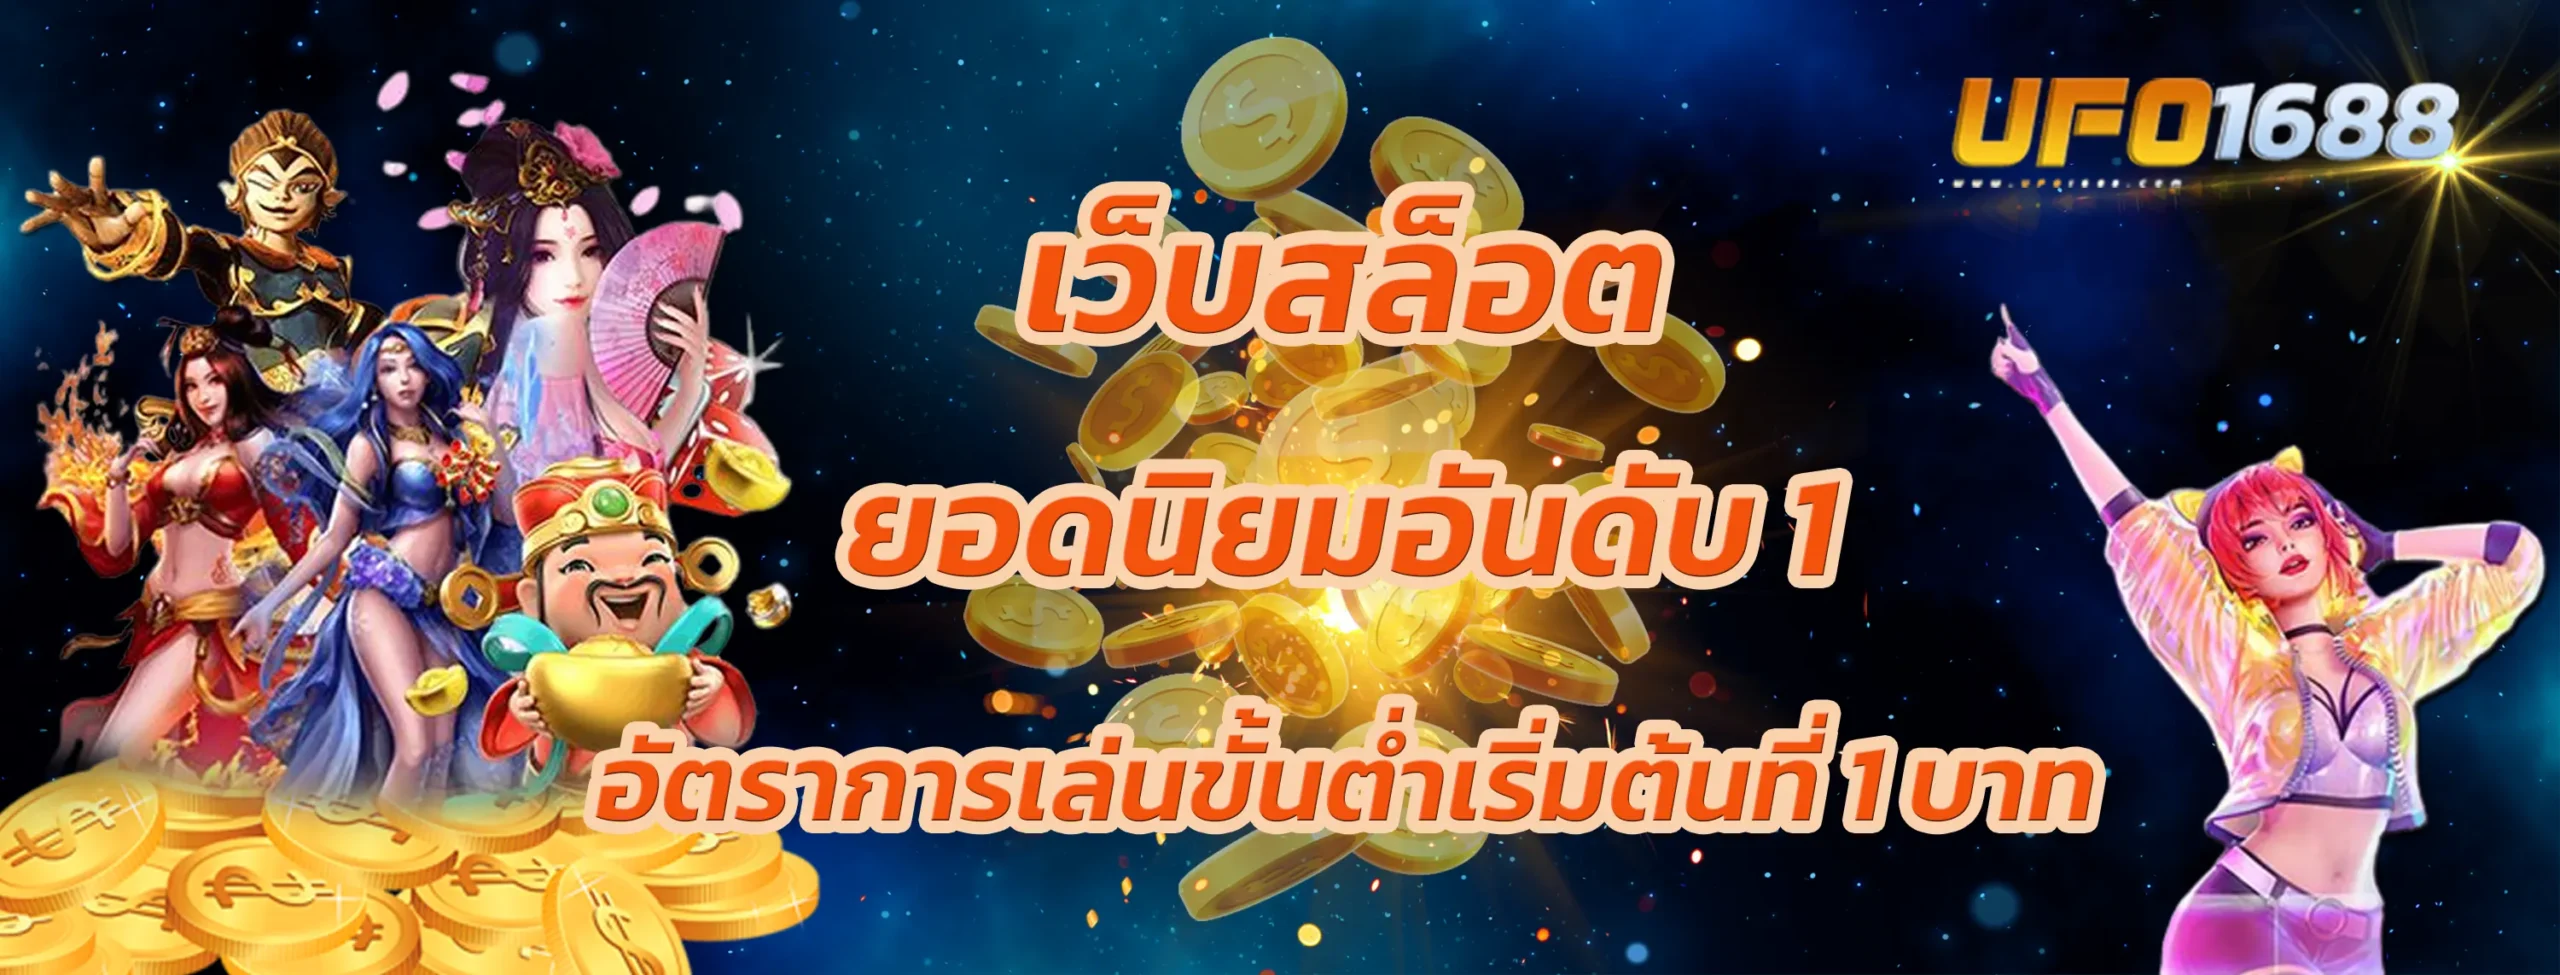 เว็บสล็อตยอดนิยมอันดับ 1 ในไทย